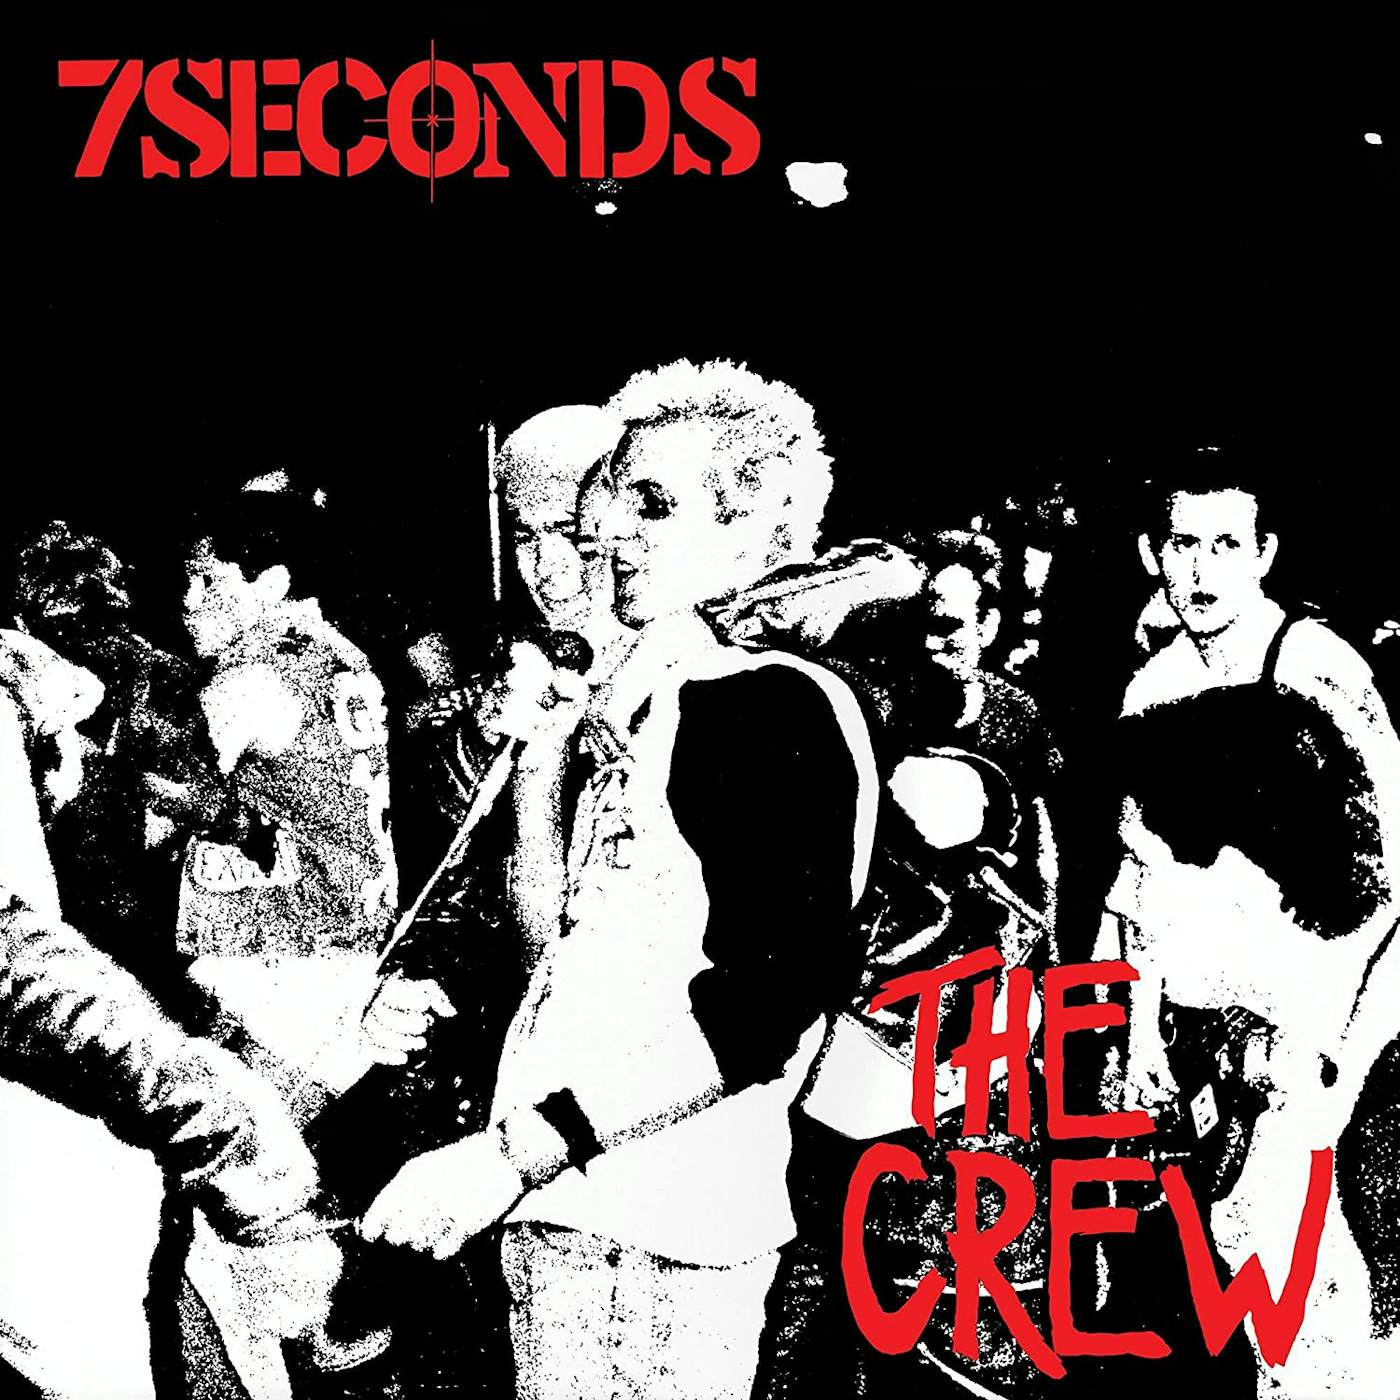 7 Seconds CREW Vinyl Record